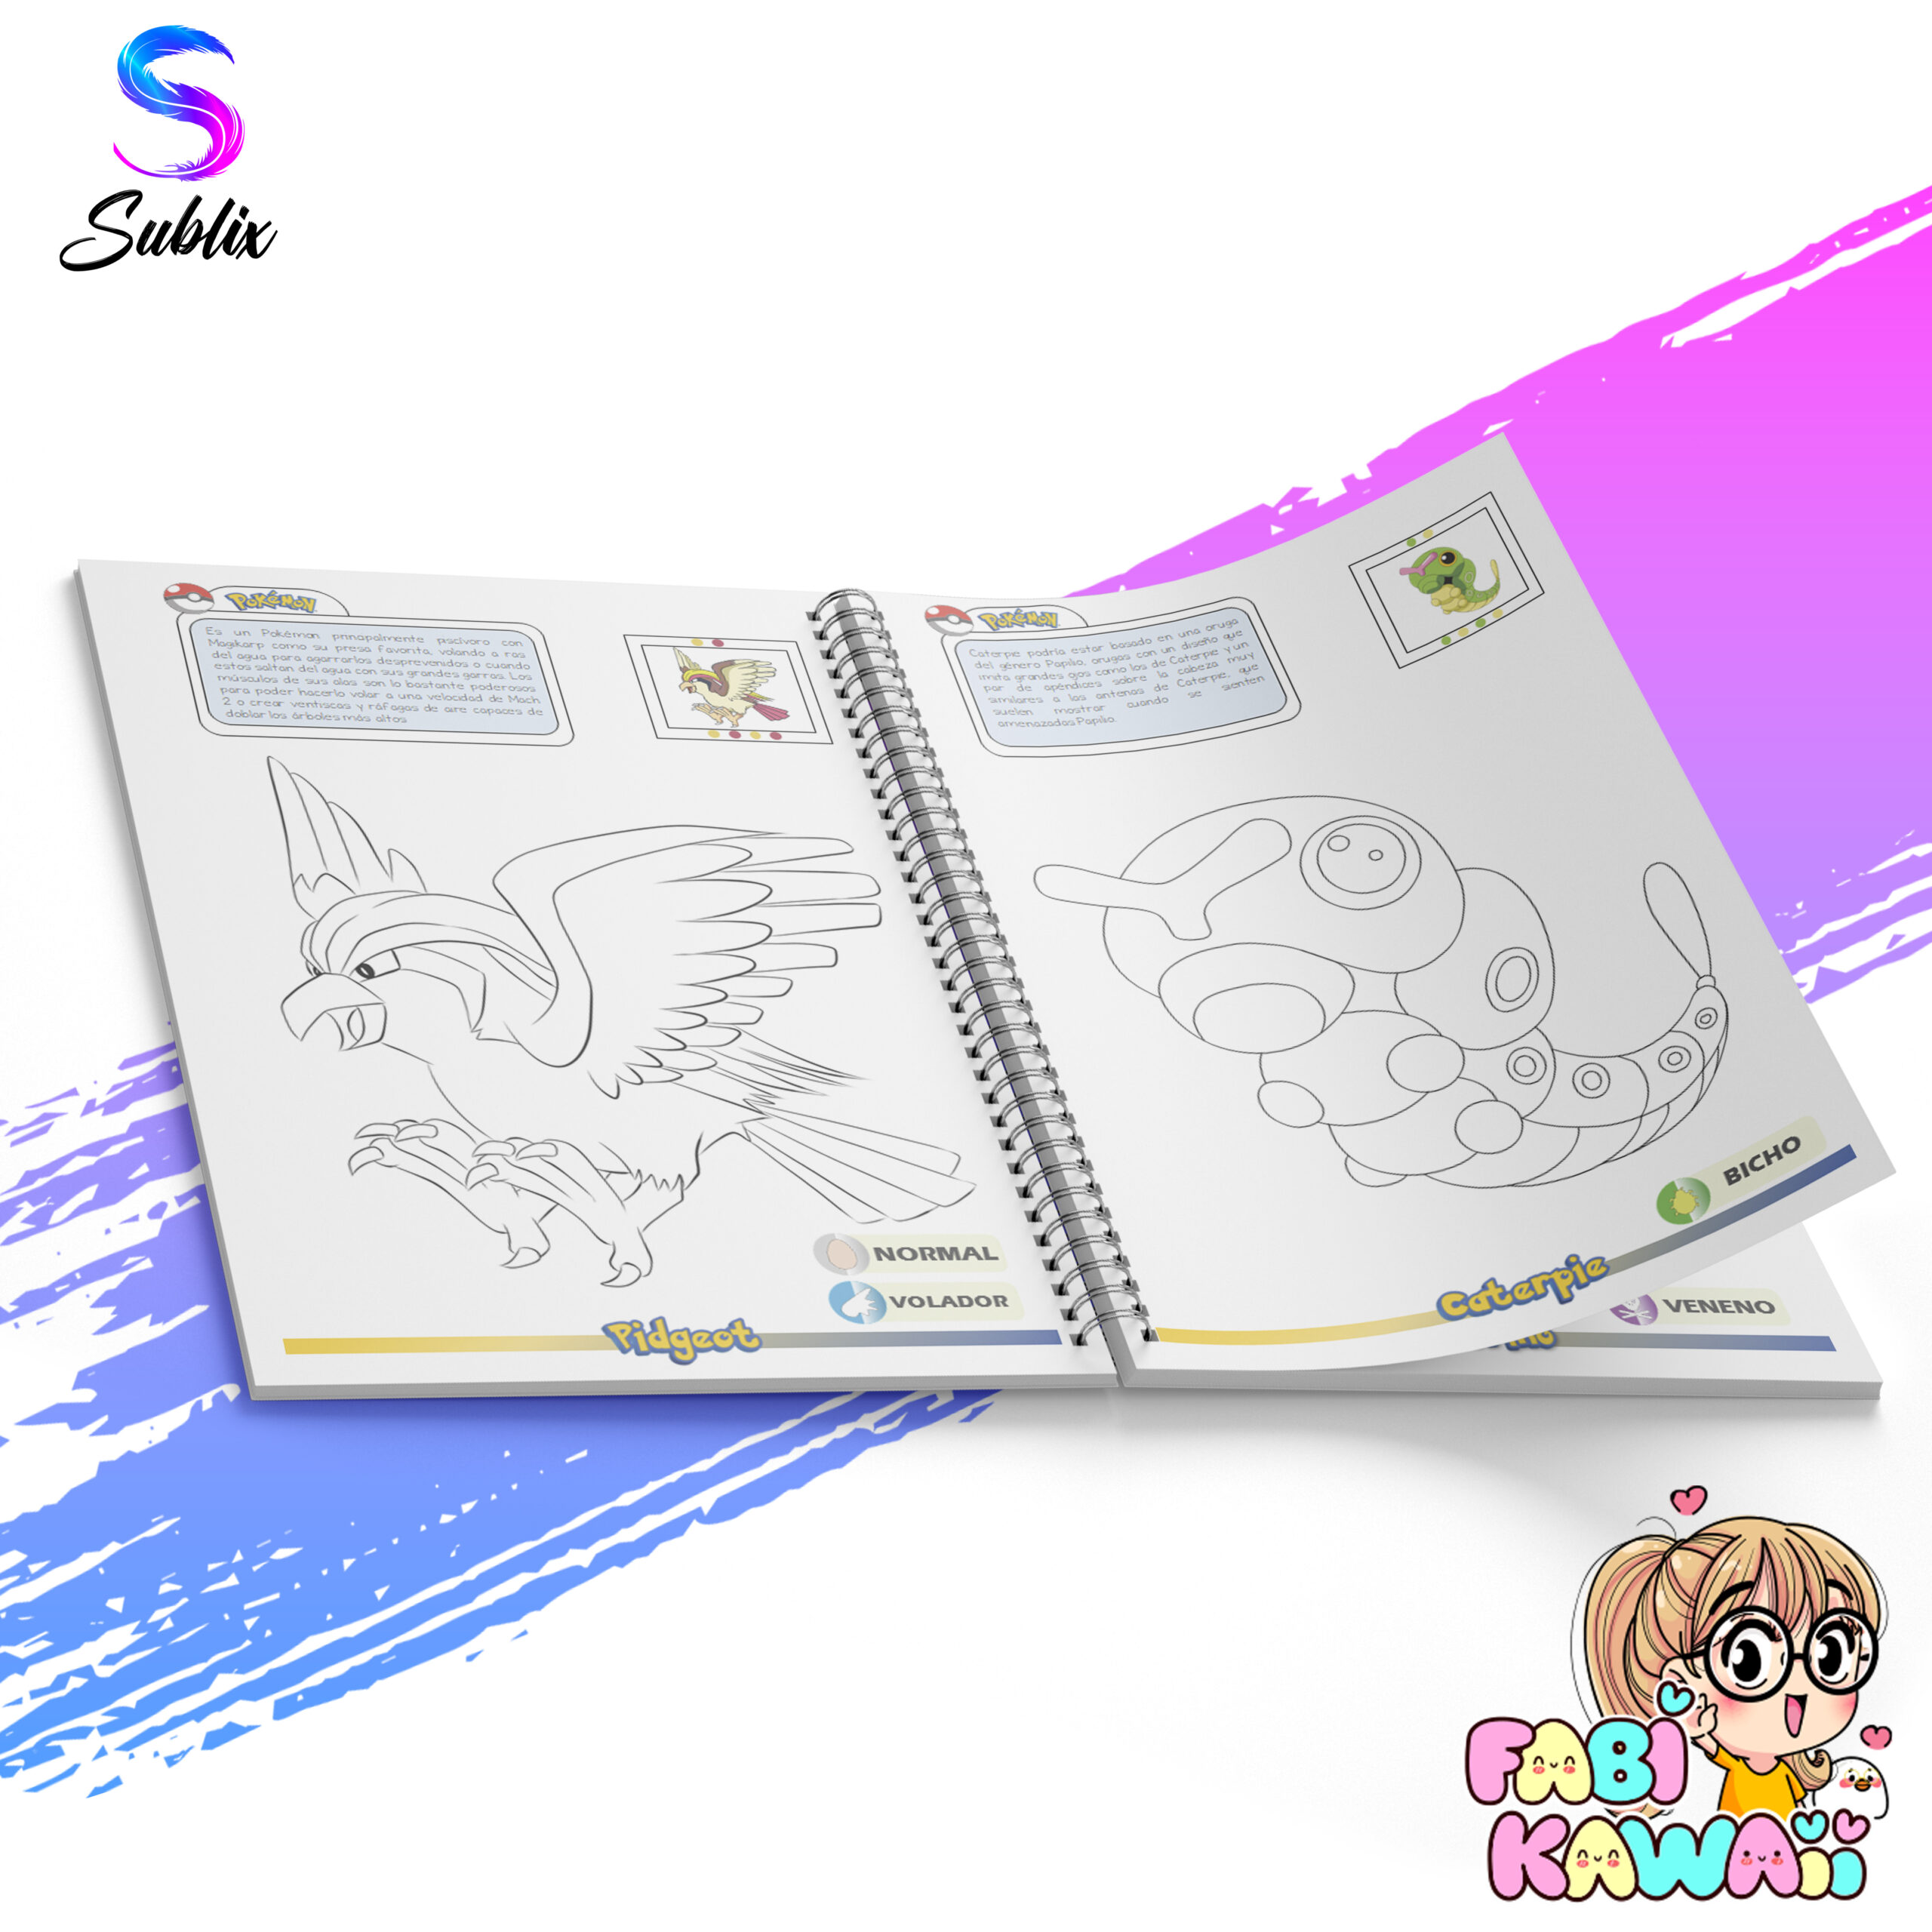 Libro para colorear + Stickers Pokémon